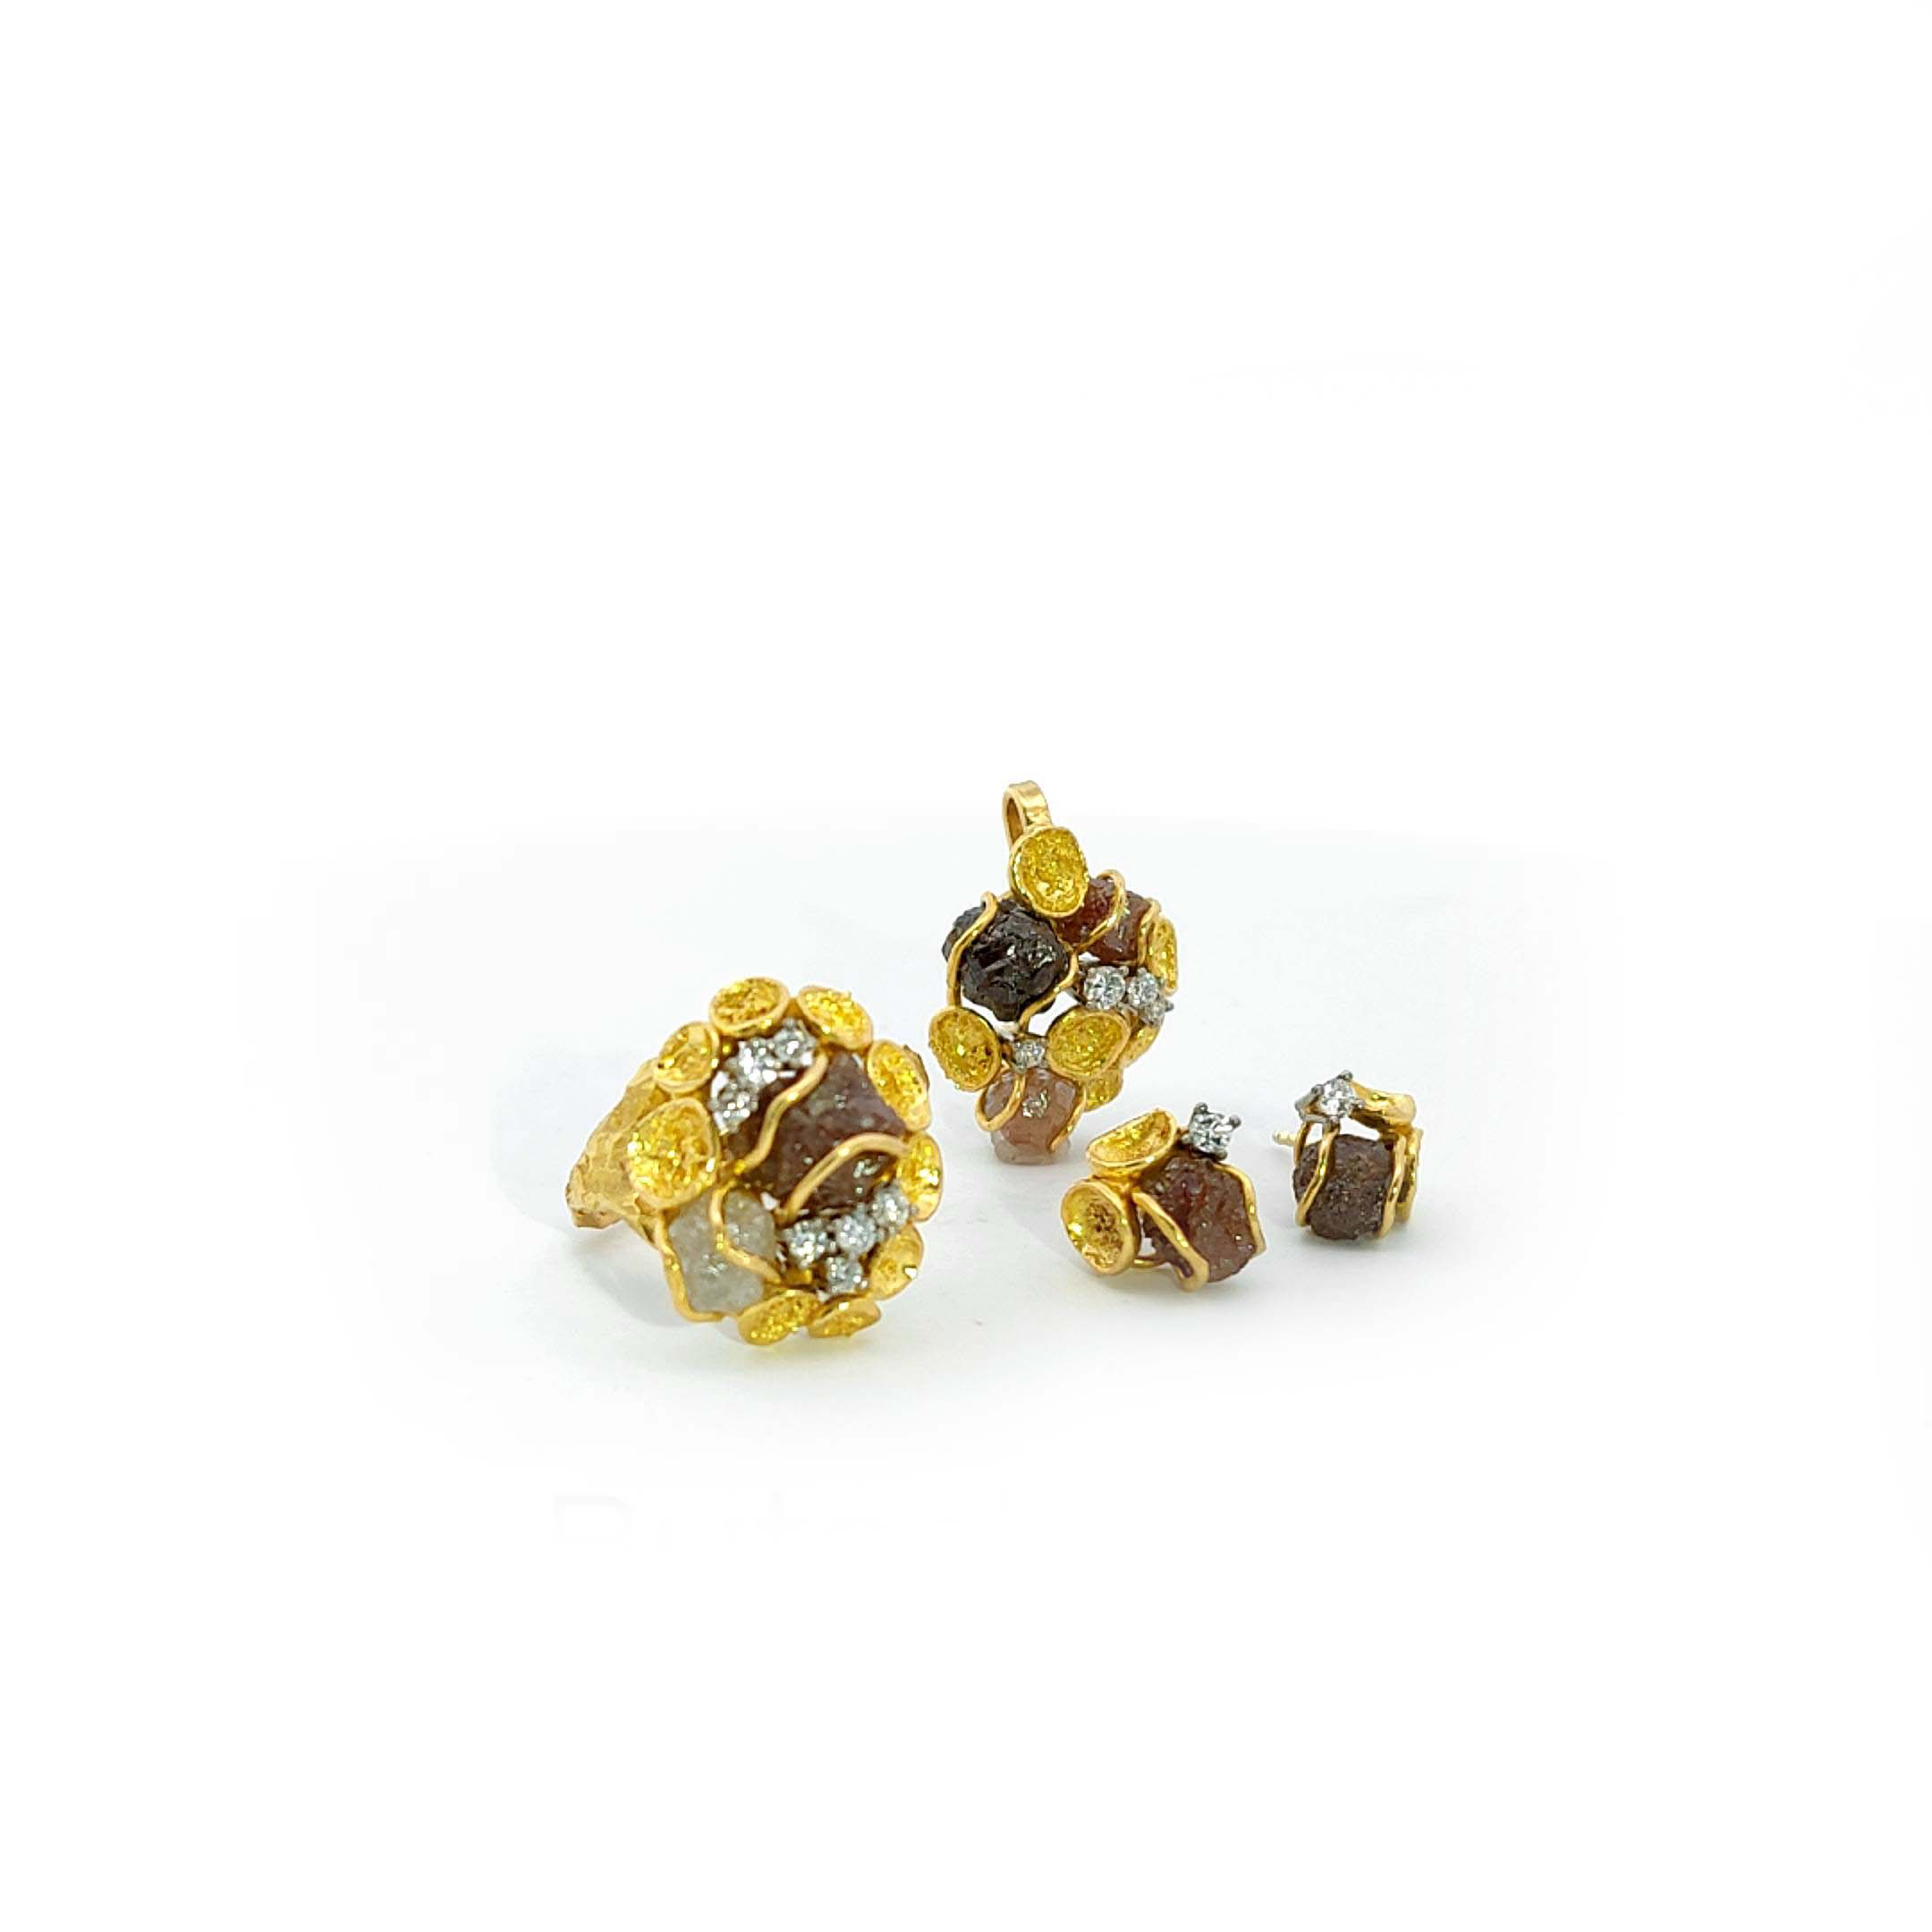 Edelstein Brosche und Edelstein Cocktail Ring mit diversen Steinen von 40ct in Gold als Set